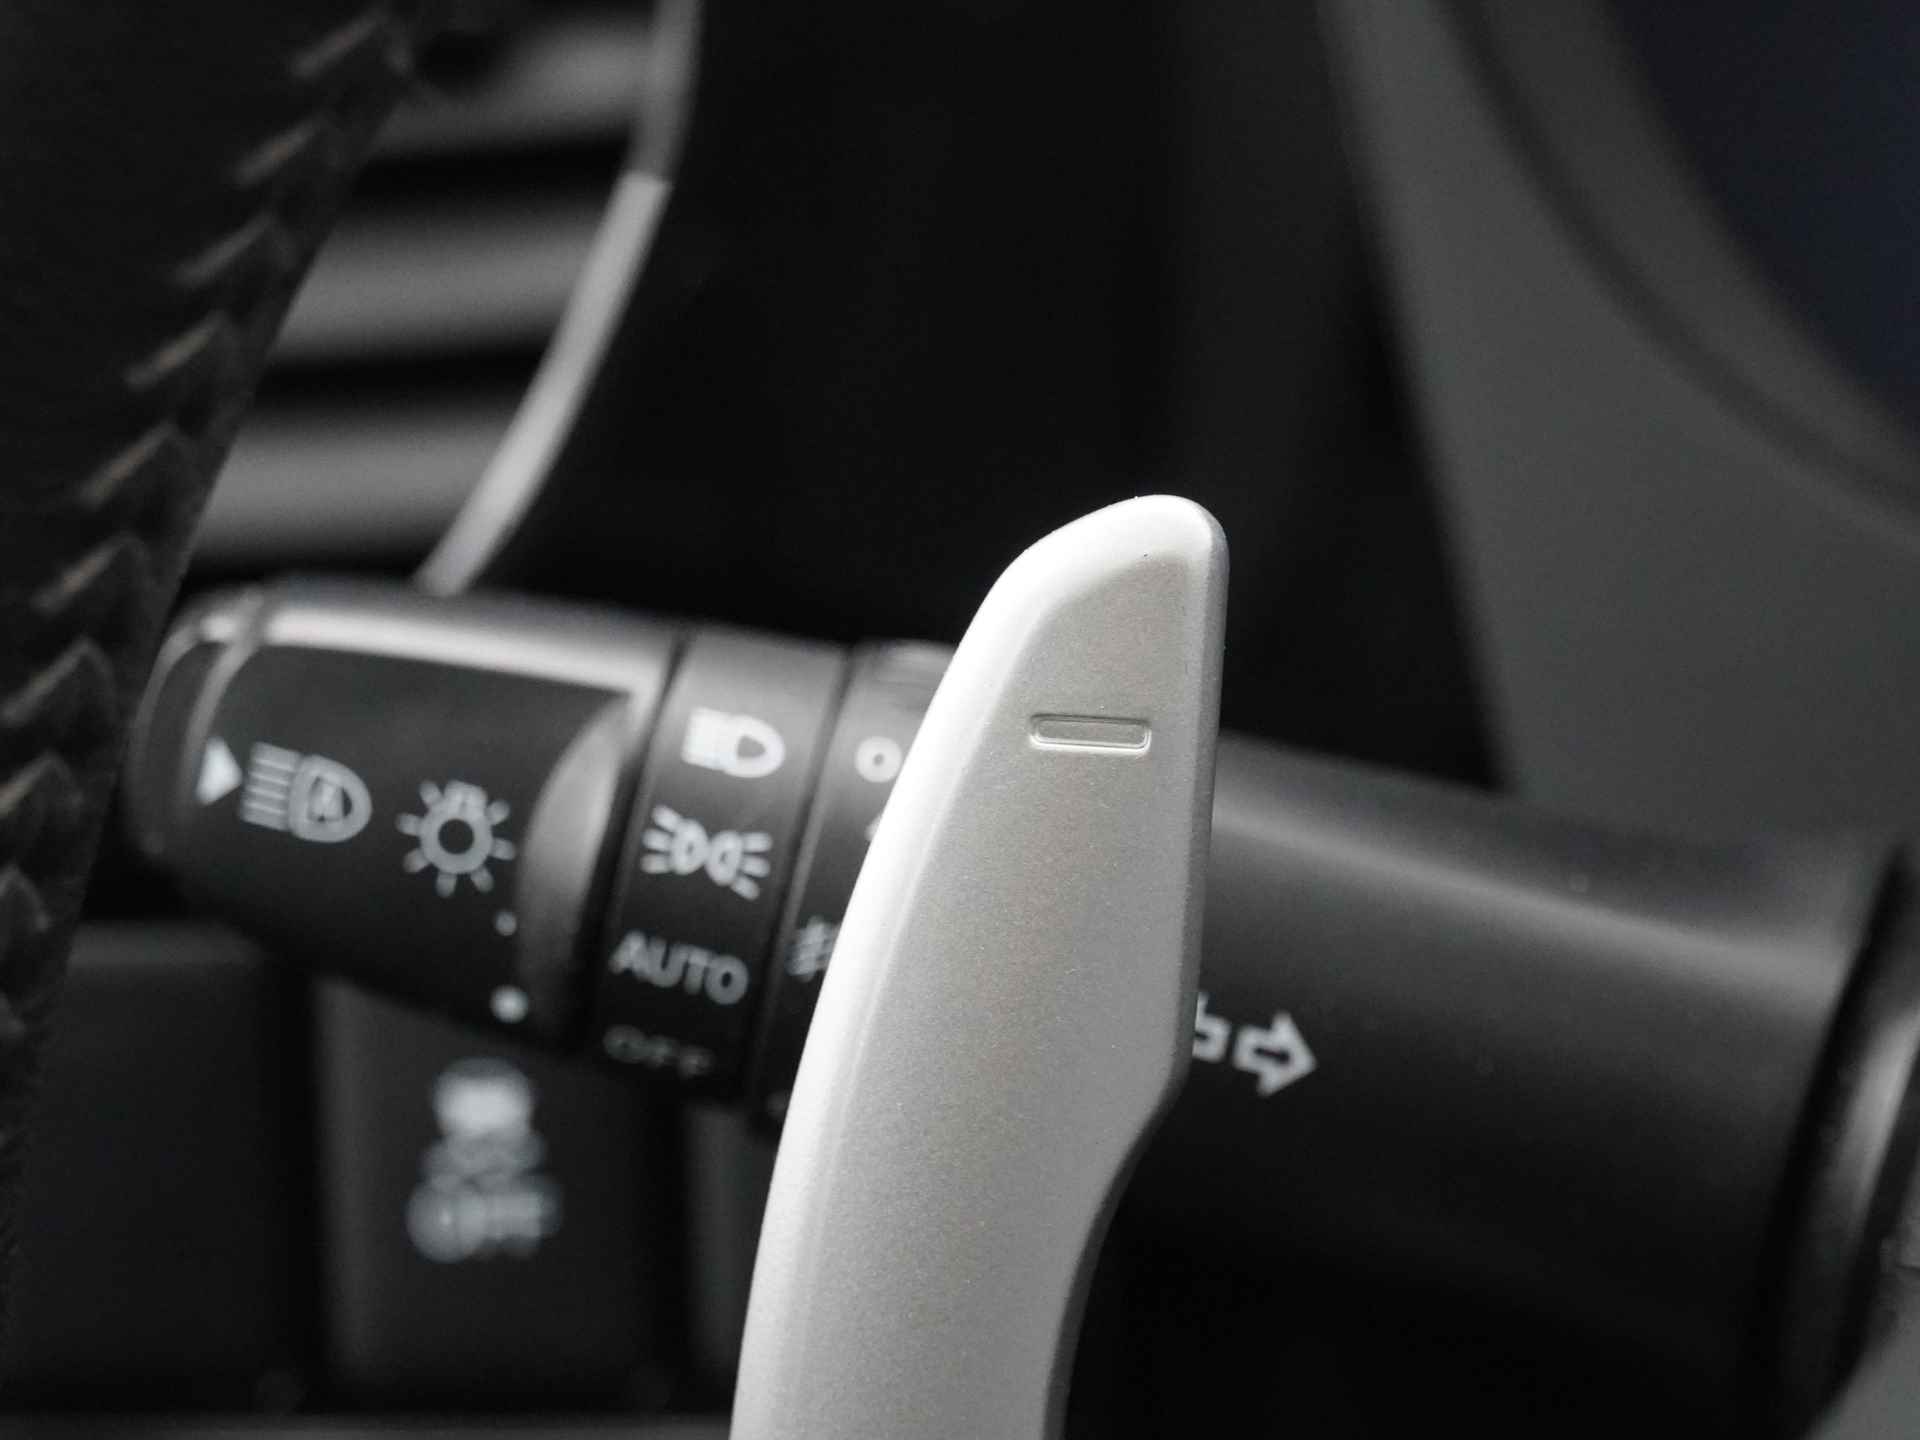 Mitsubishi Outlander 2.0 Instyle+ 4WD - Schuifkanteldak - Lederen bekleding - Voorraam verwarming - Apple CarPlay / Android Auto - Elektrische achterklep - 12 Maanden bovag garantie - 26/48